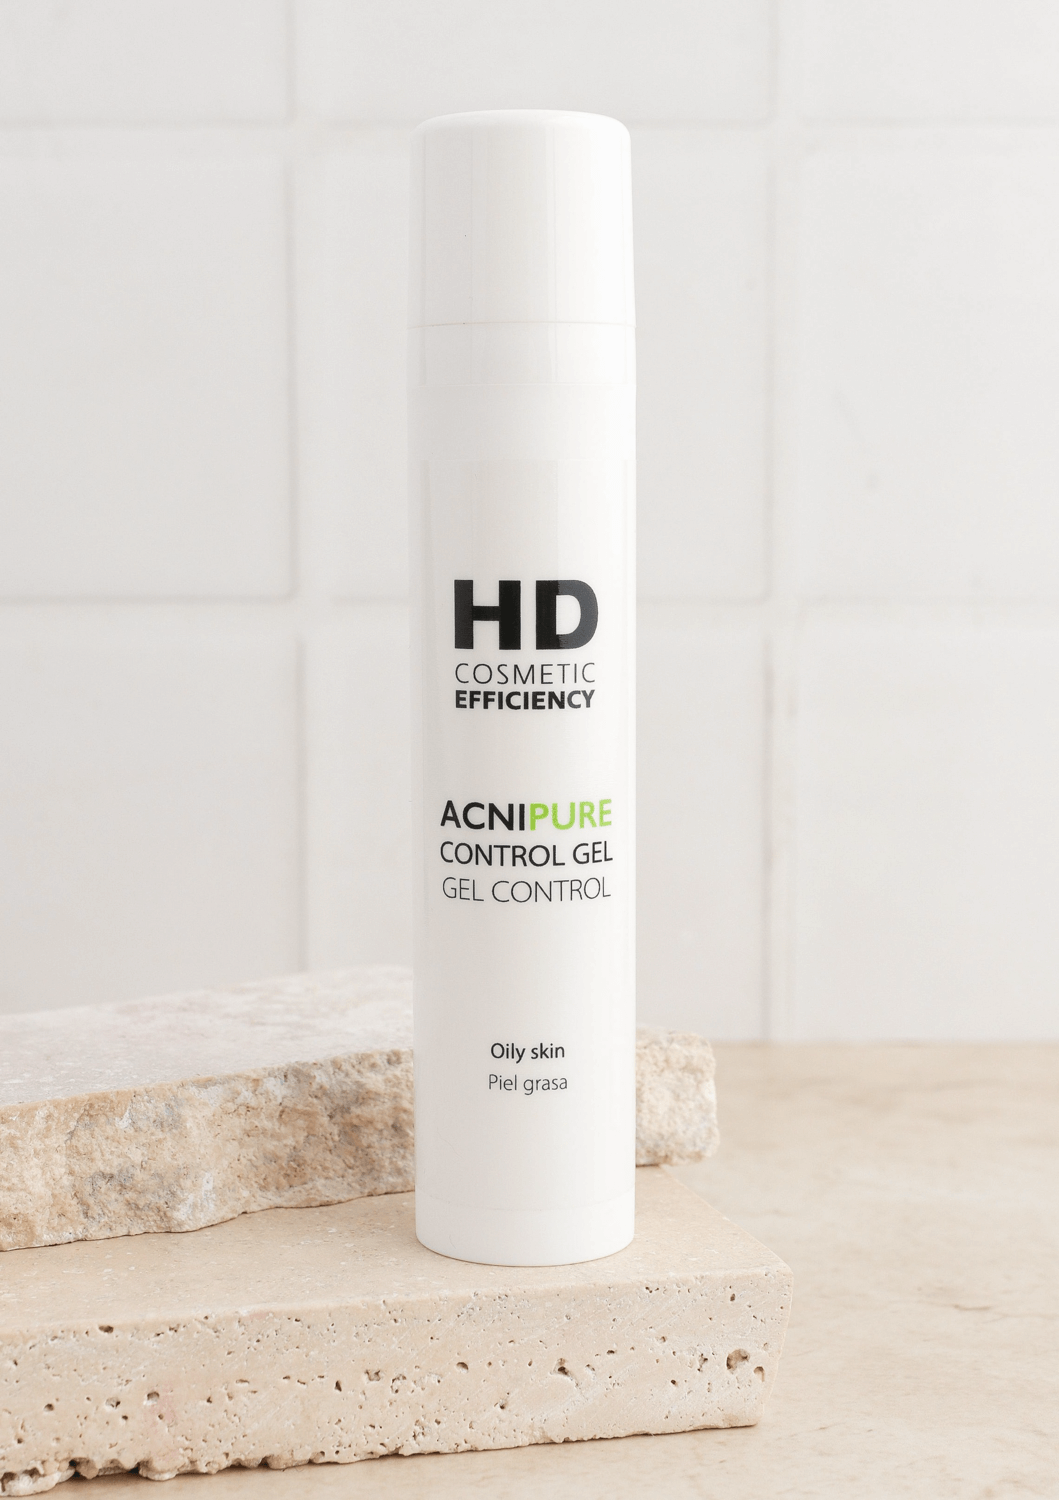 HD Cosmetic control de acné comprar